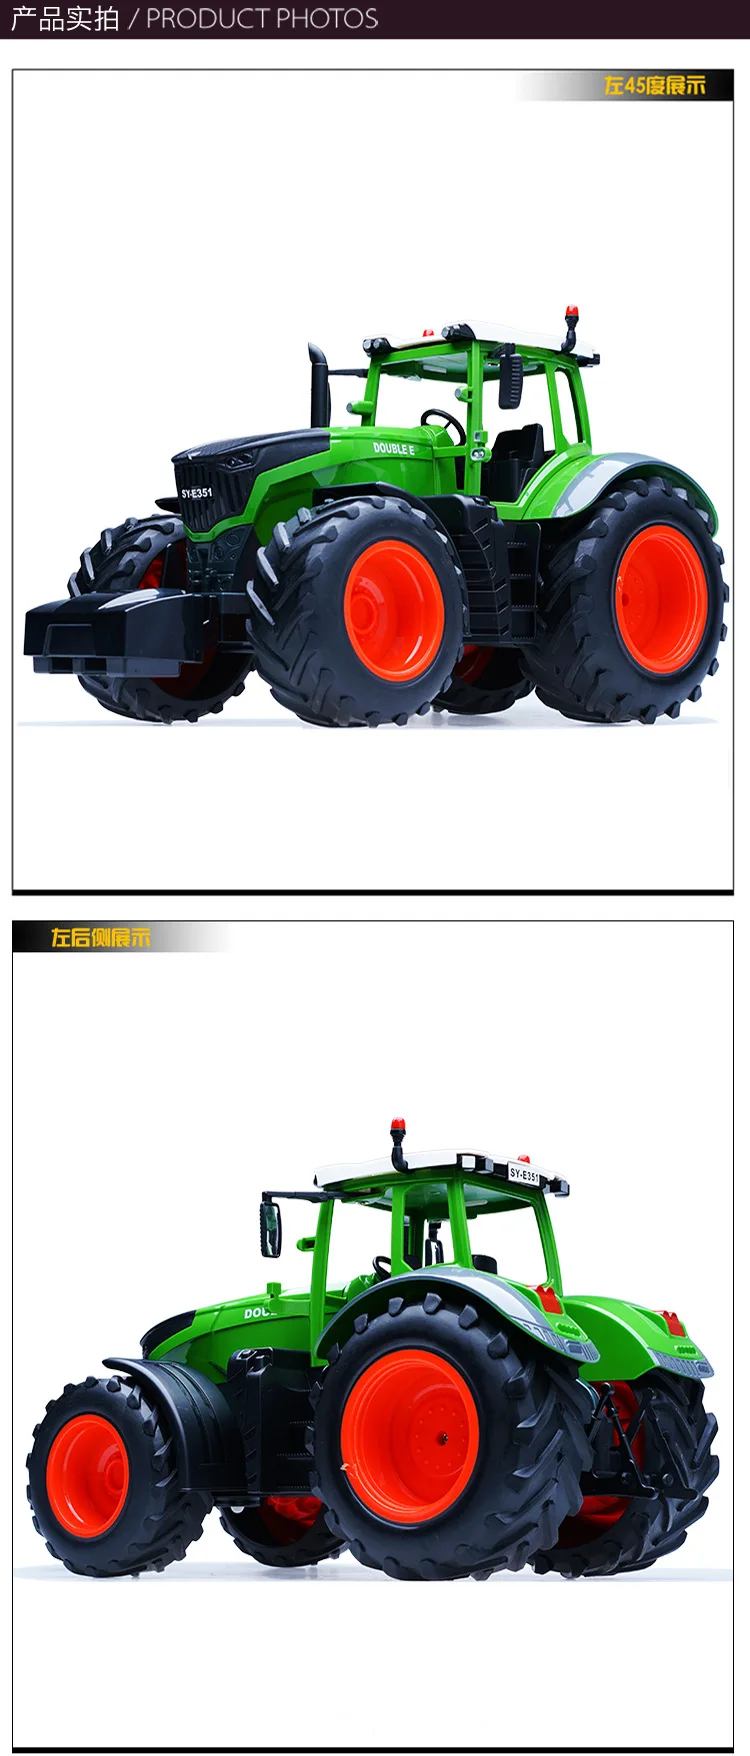 RC грузовик прицеп самосвал урожай 4 колеса RC трактор 2,4 г дистанционное управление трактор инженерные транспортные средства модель игрушки для детей Подарки